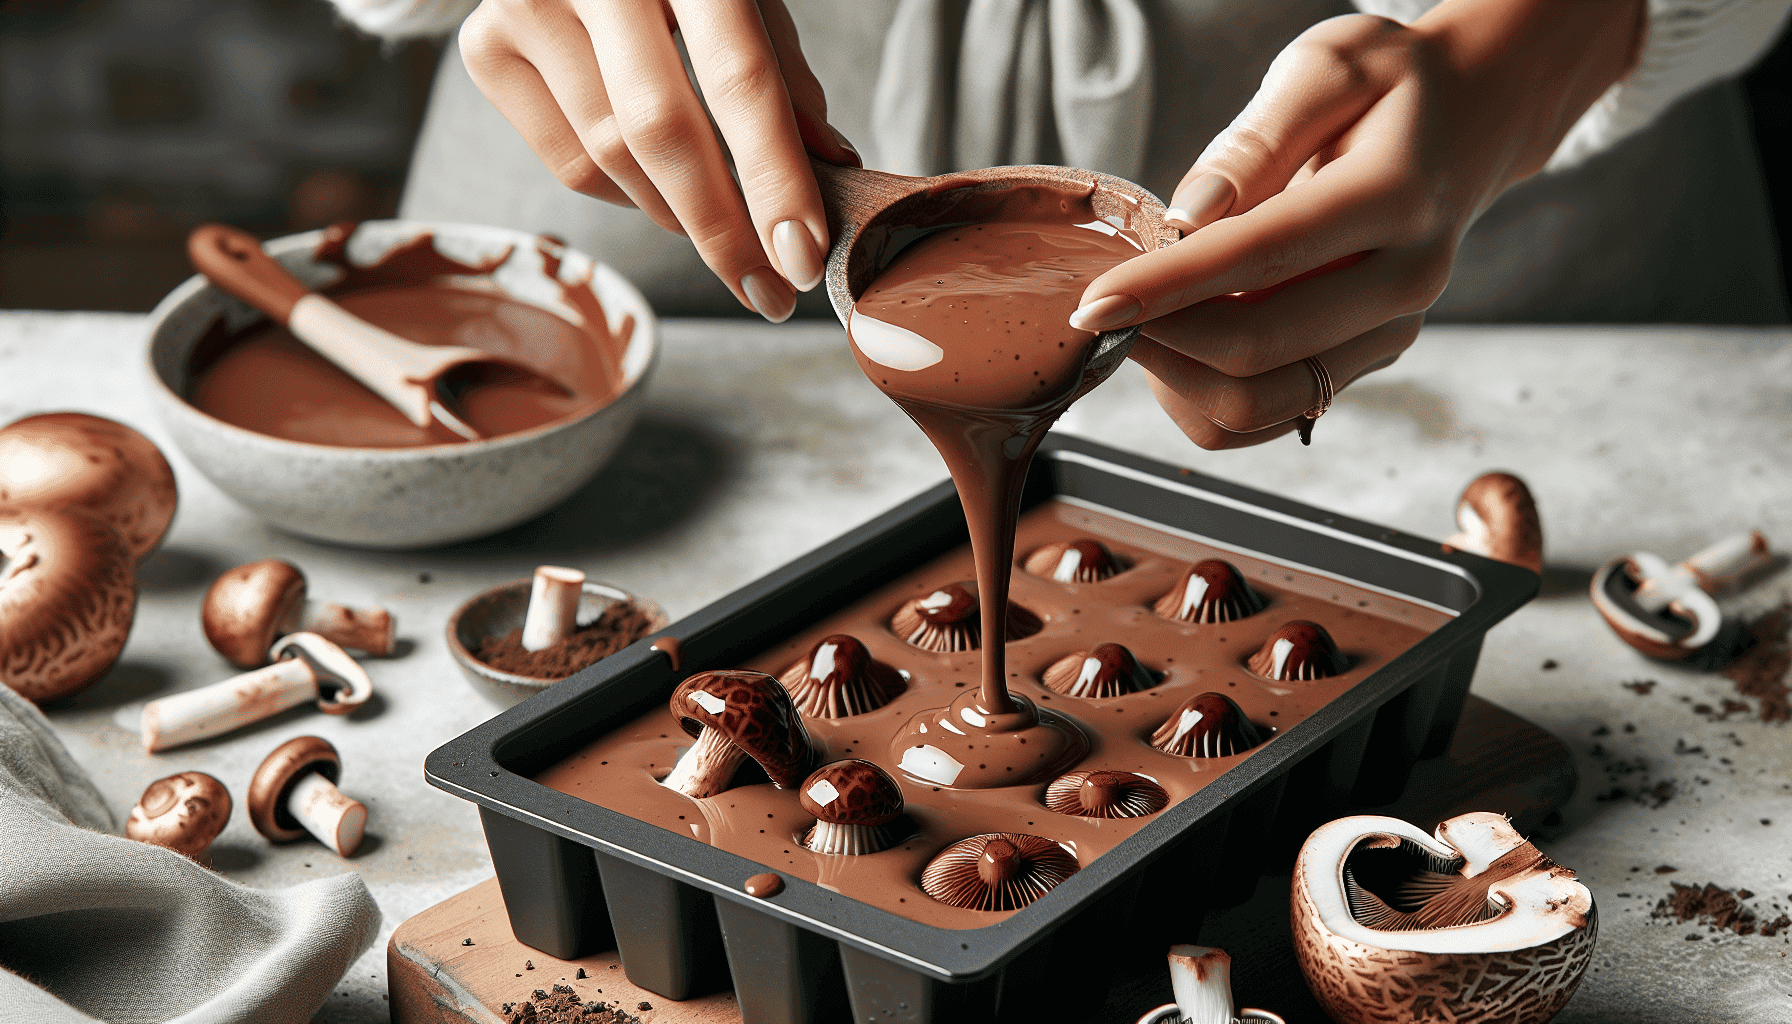 Crafting process of mushroom-infused chocolates, magic mushroom chocolate